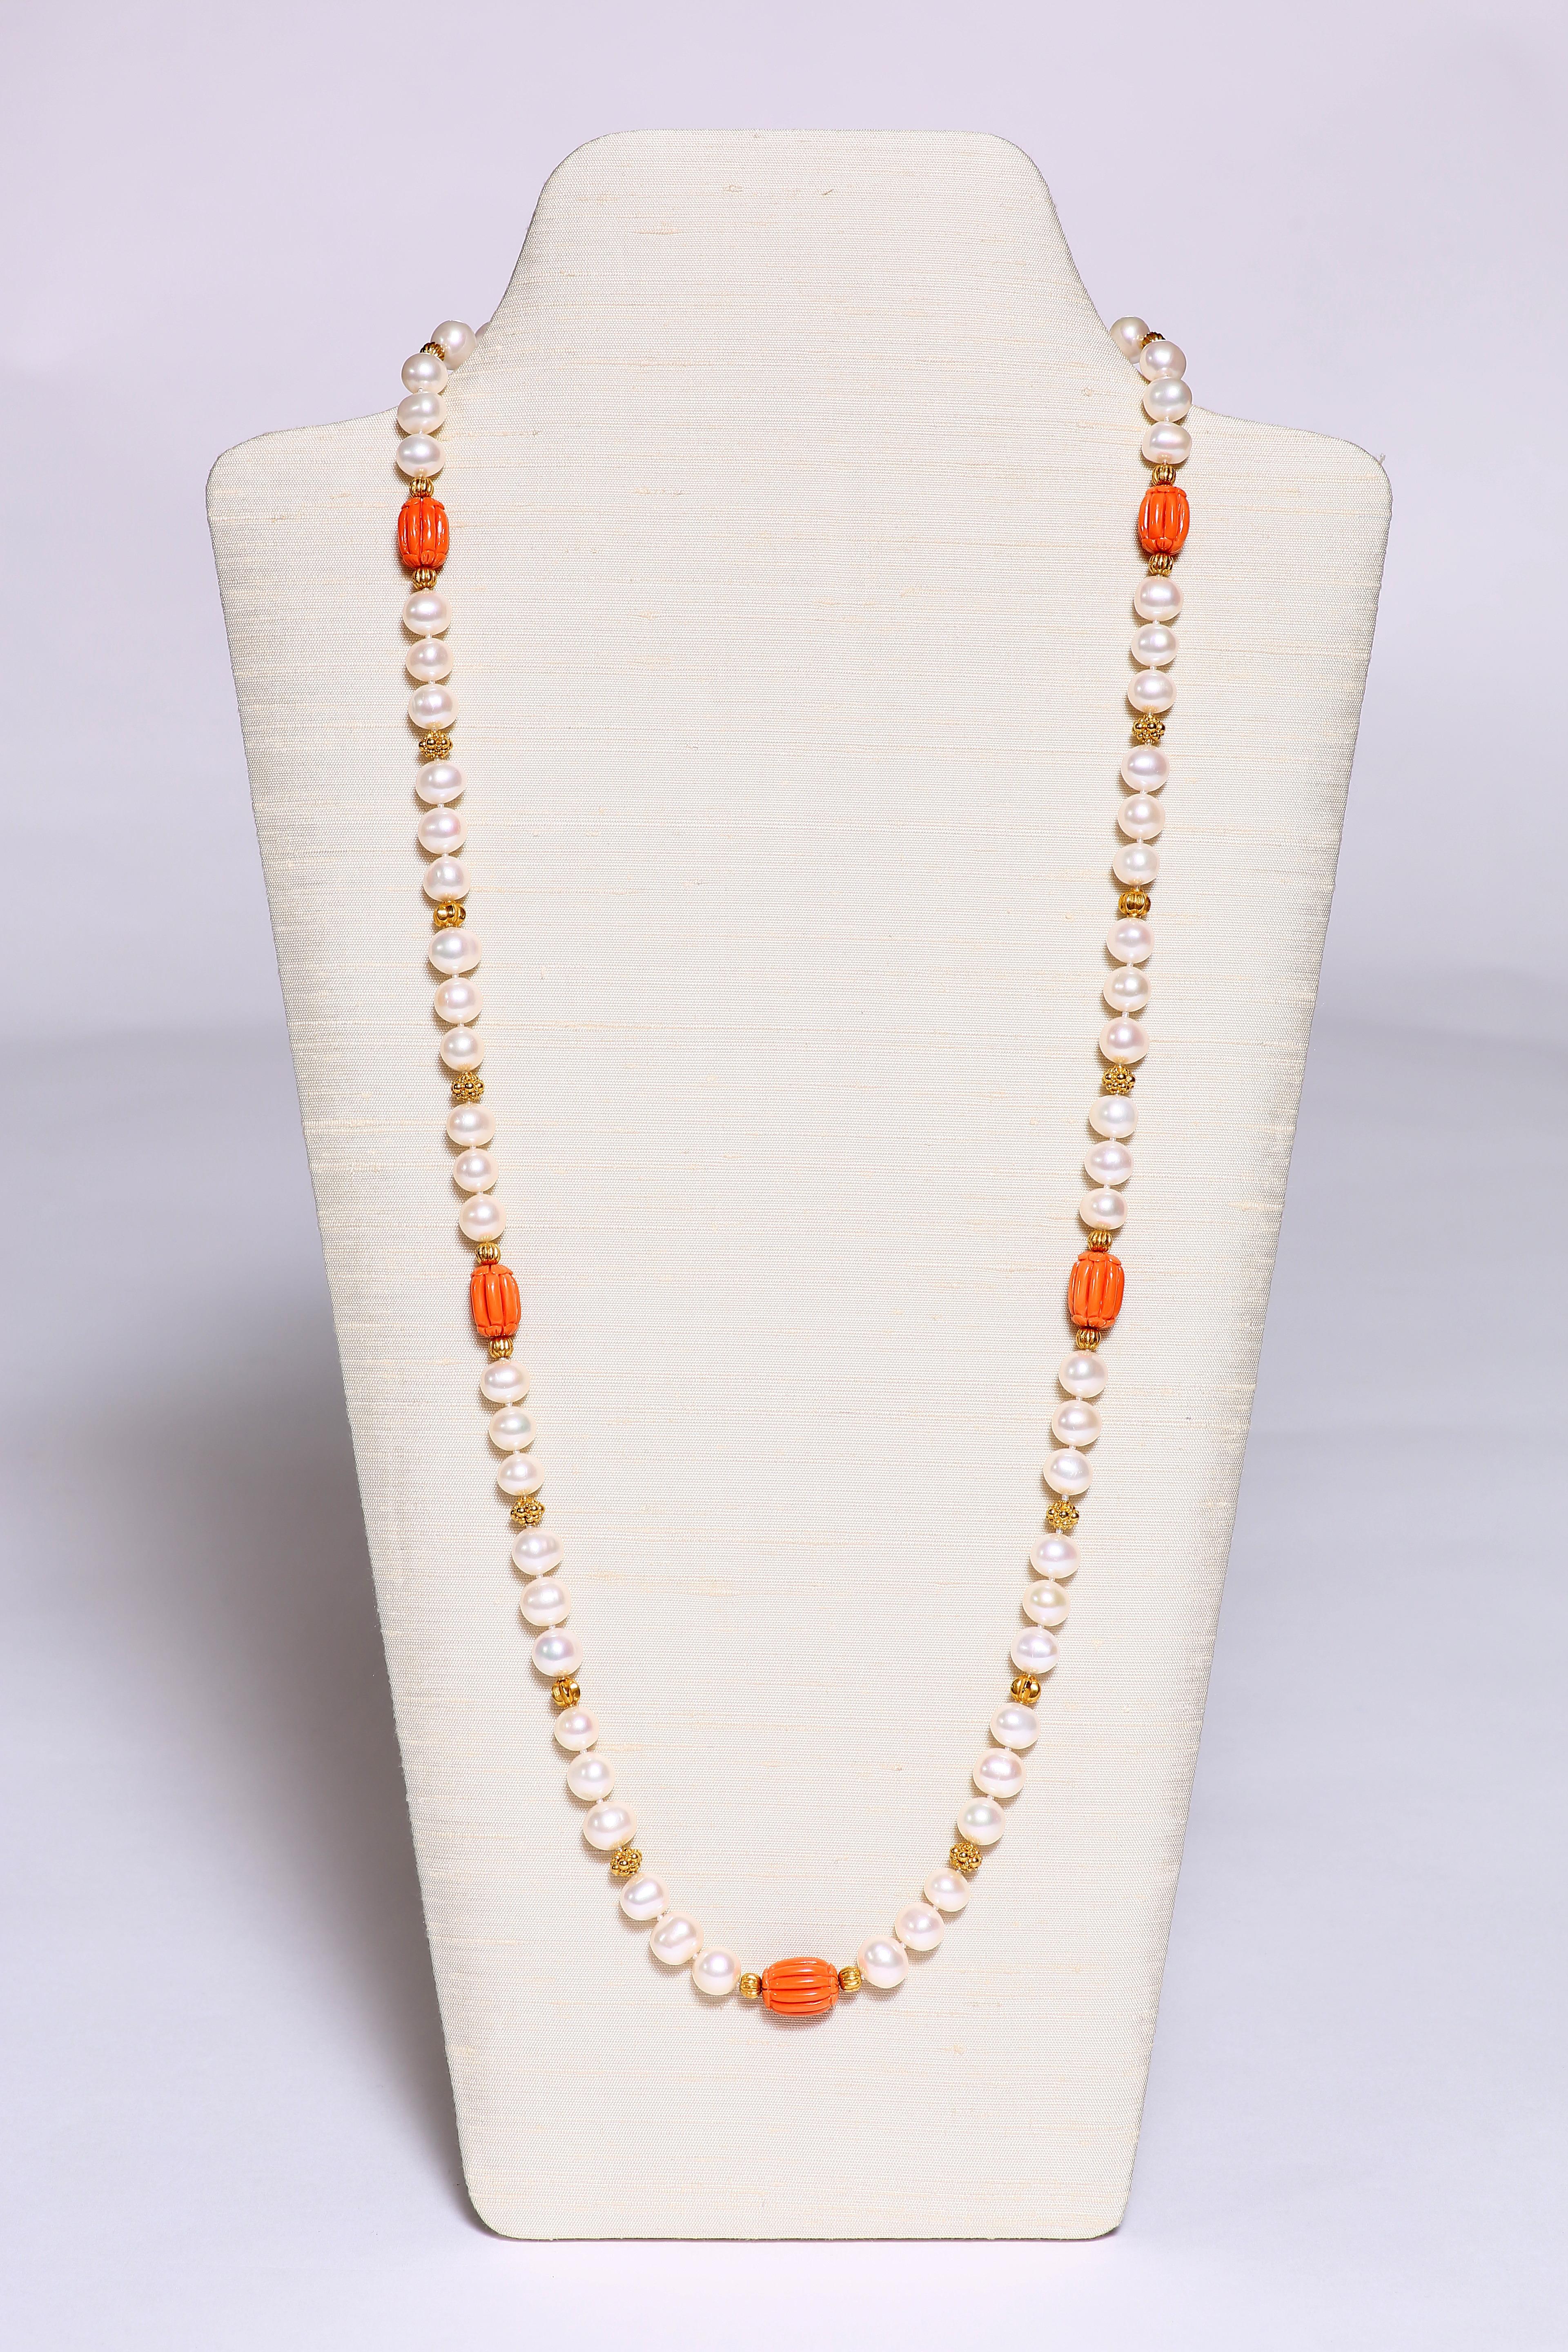 Du corail de Sardaigne, des perles d'eau douce et des perles dorées à facettes forment ce superbe collier long de 32 1/2 